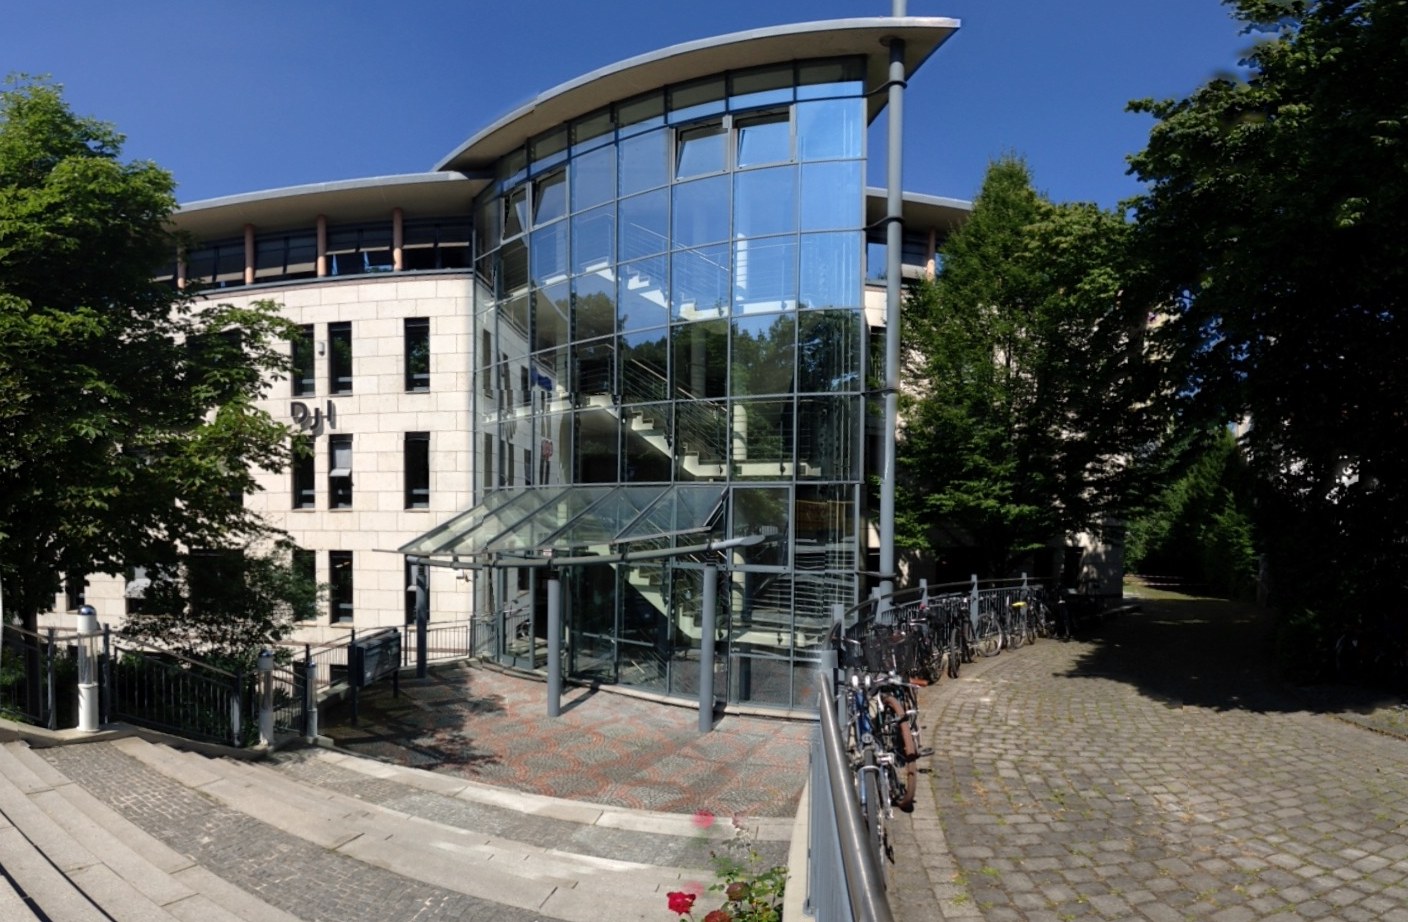 The headquarters of the German Youth Institute (Deutsche Jugendinstitut – DJI) in Munich. (PHOTO: DJI)